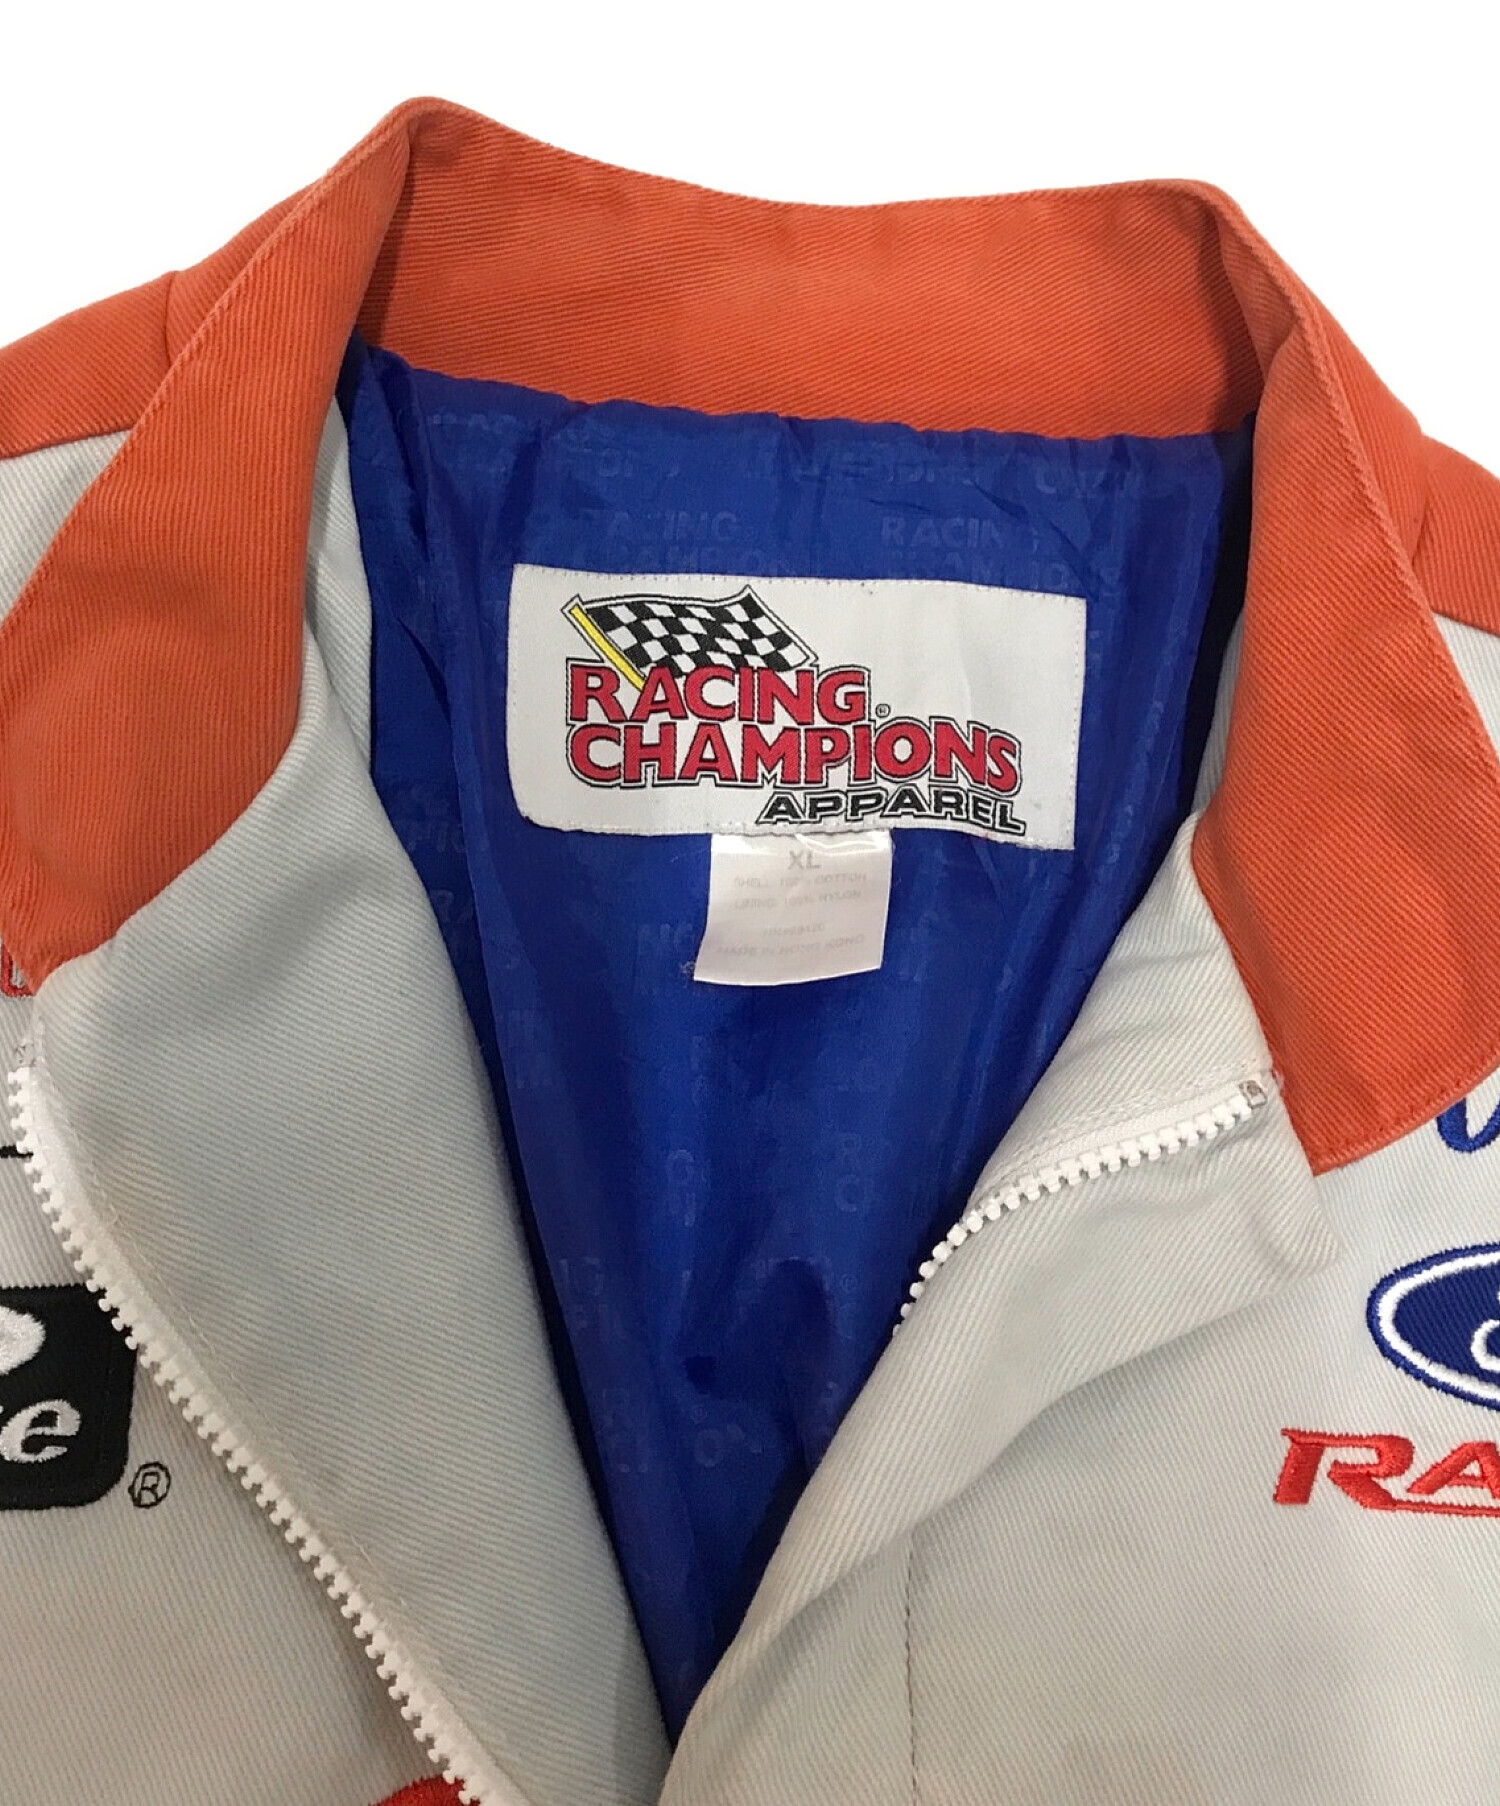 RACING CHAMPIONS APPAREL (レーシングチャンピオンアパレル) Tideレーシングジャケット オレンジ サイズ:XL